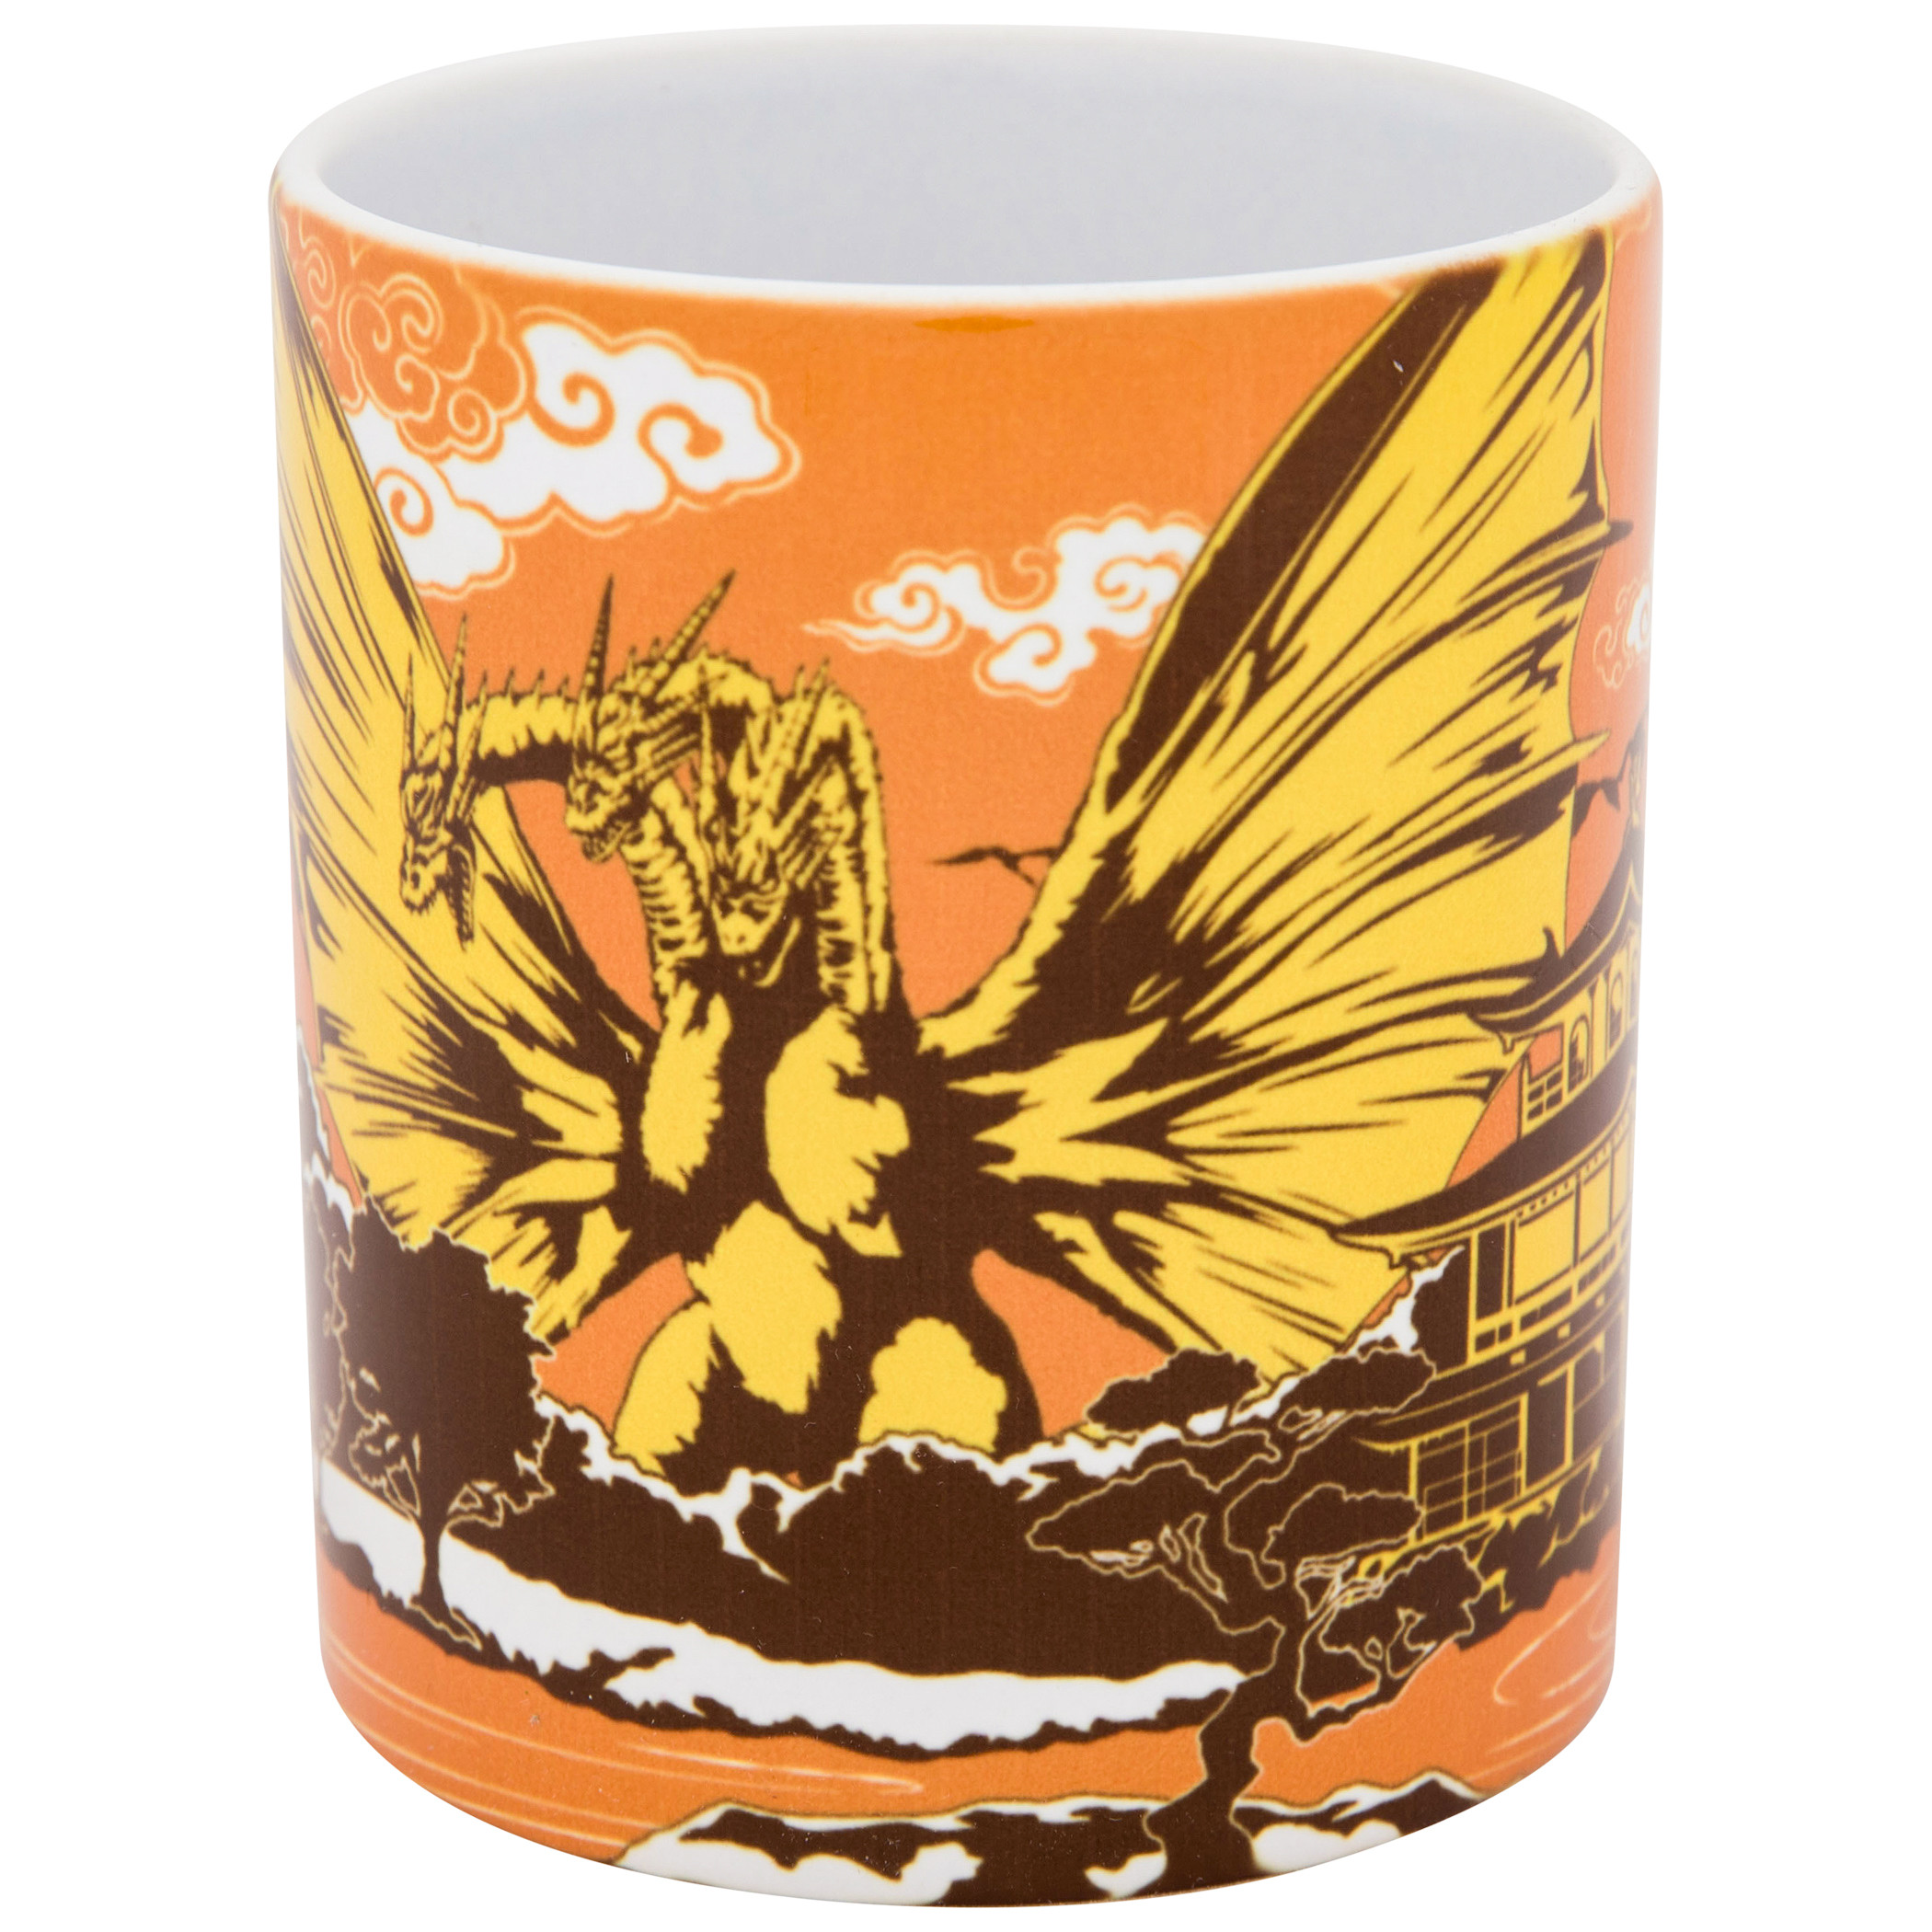 Godzilla Ghidorah 11 oz. Ceramic Mug